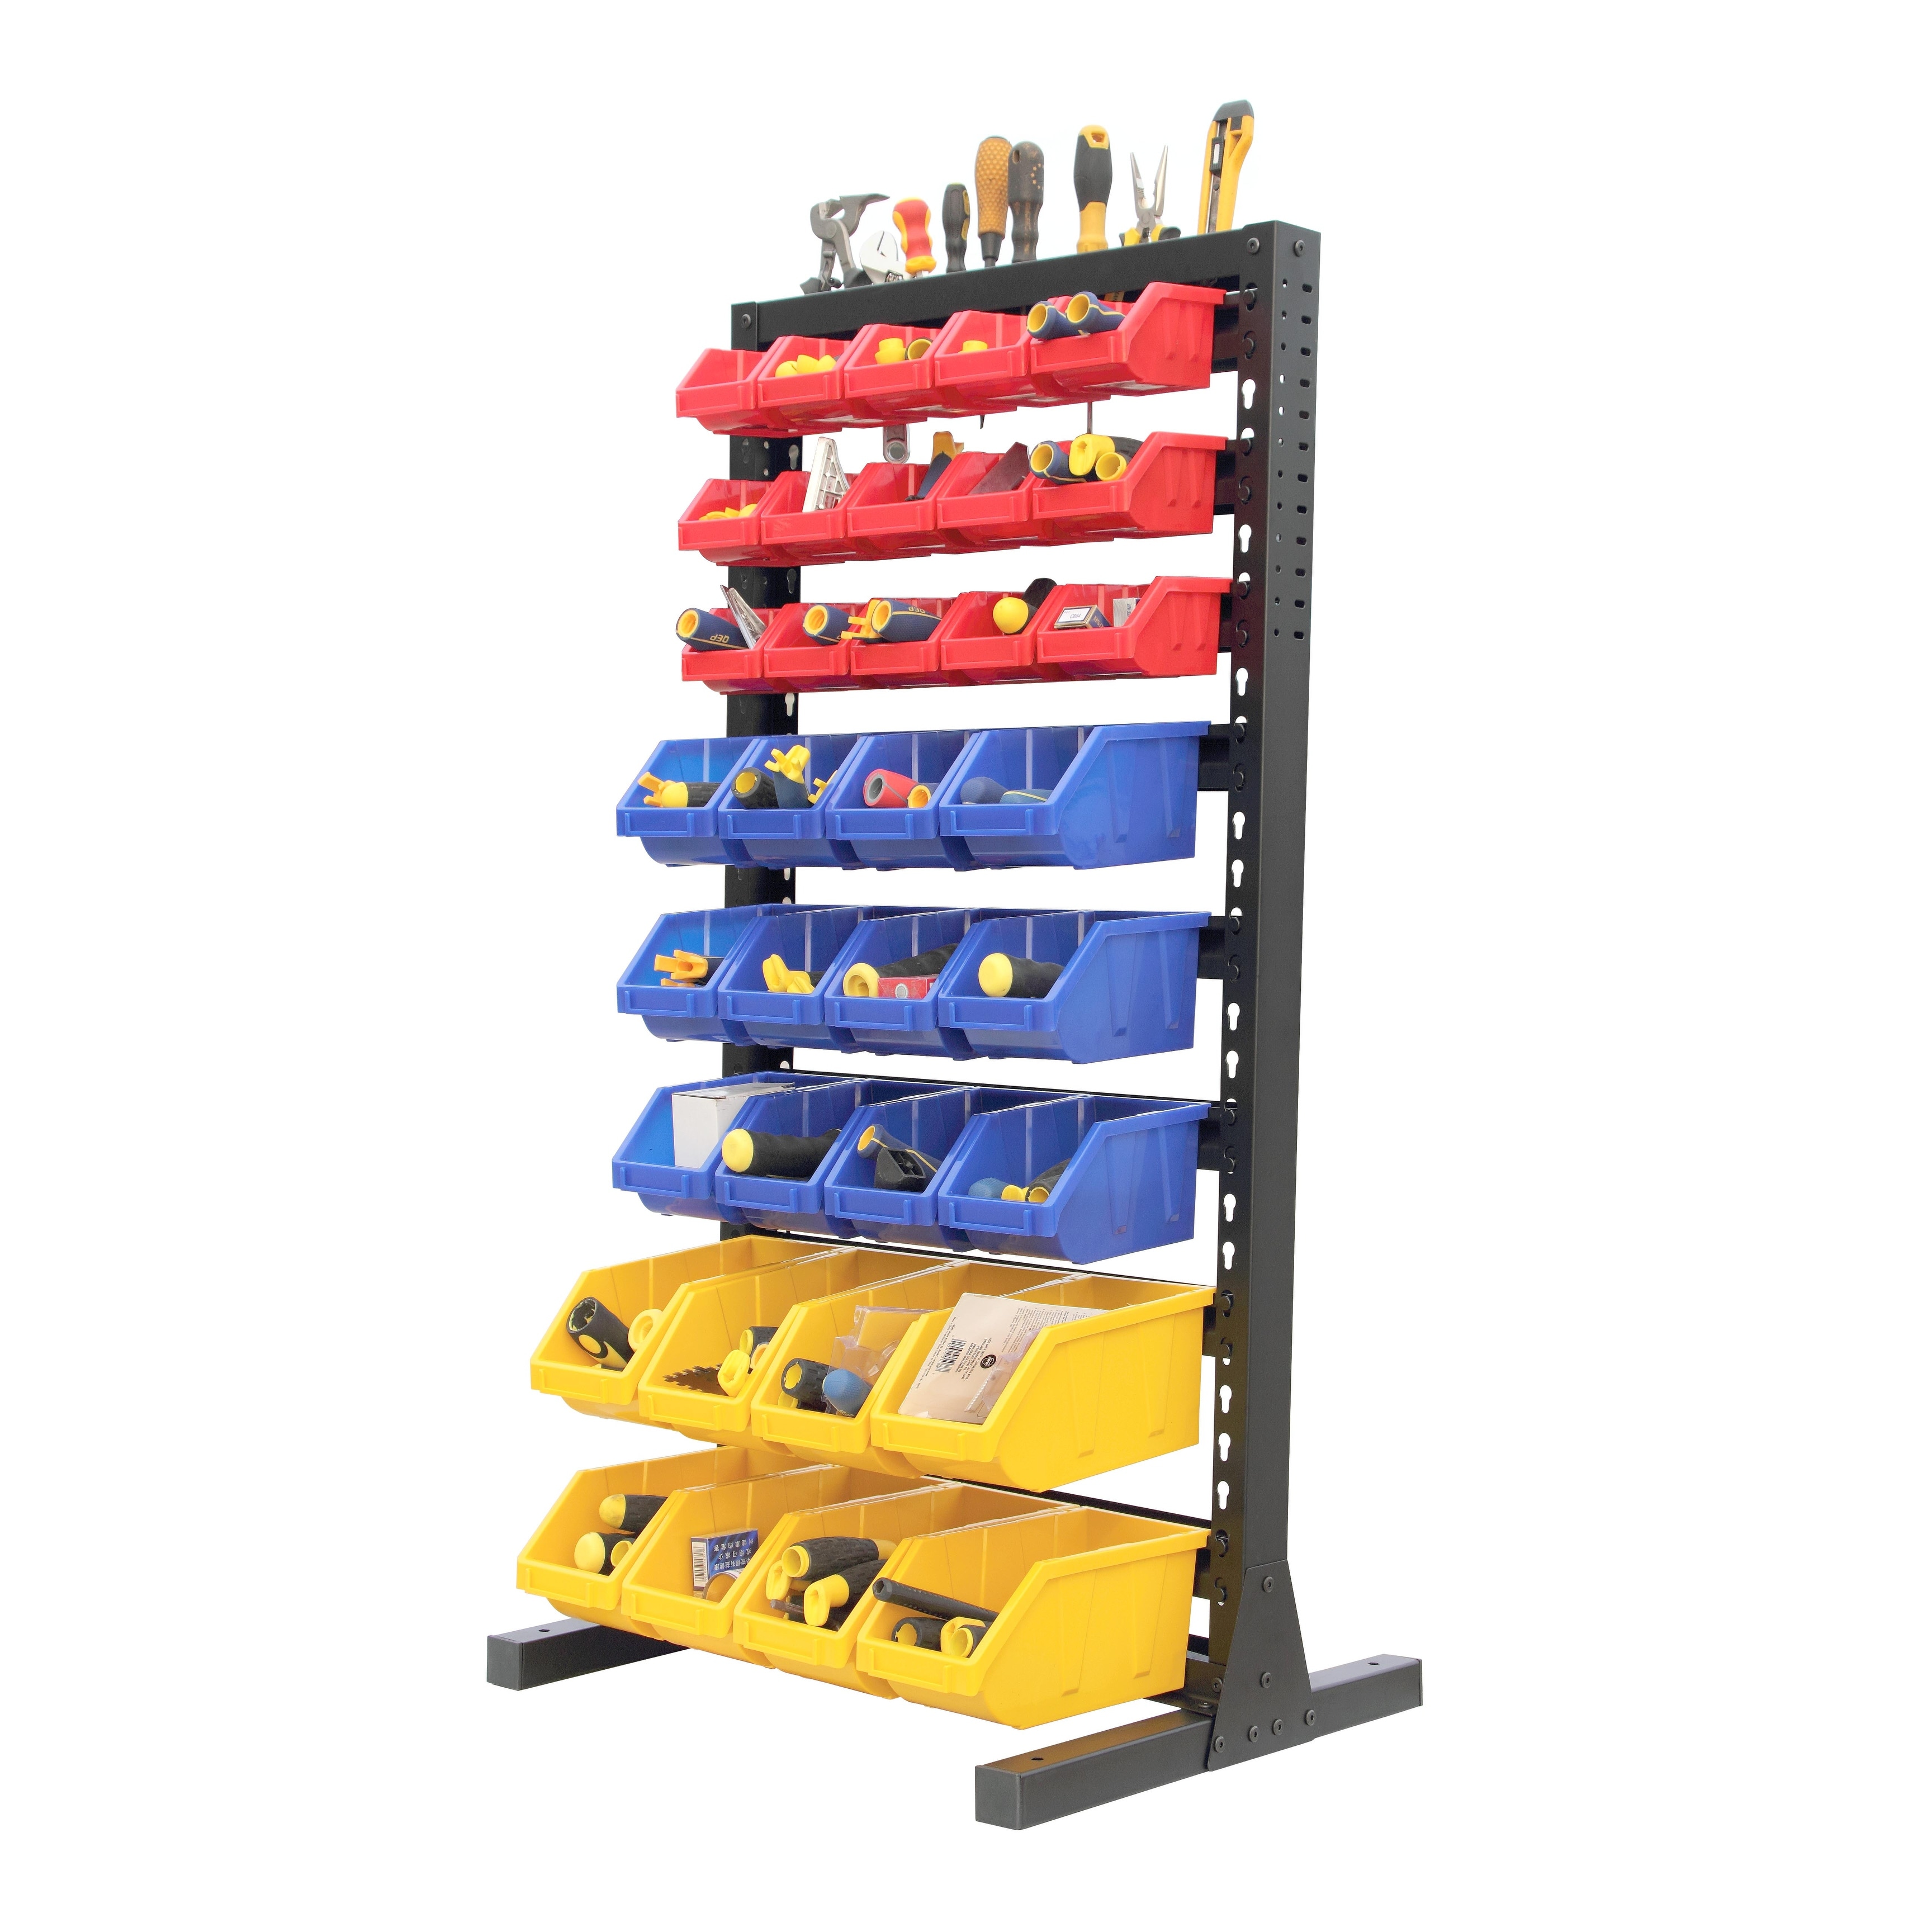 King's Rack Bin Rack Storage System Heavy Duty Steel Rack Organizer  Shelving Unit w/ 16 Plastic Bins in 6 tiers